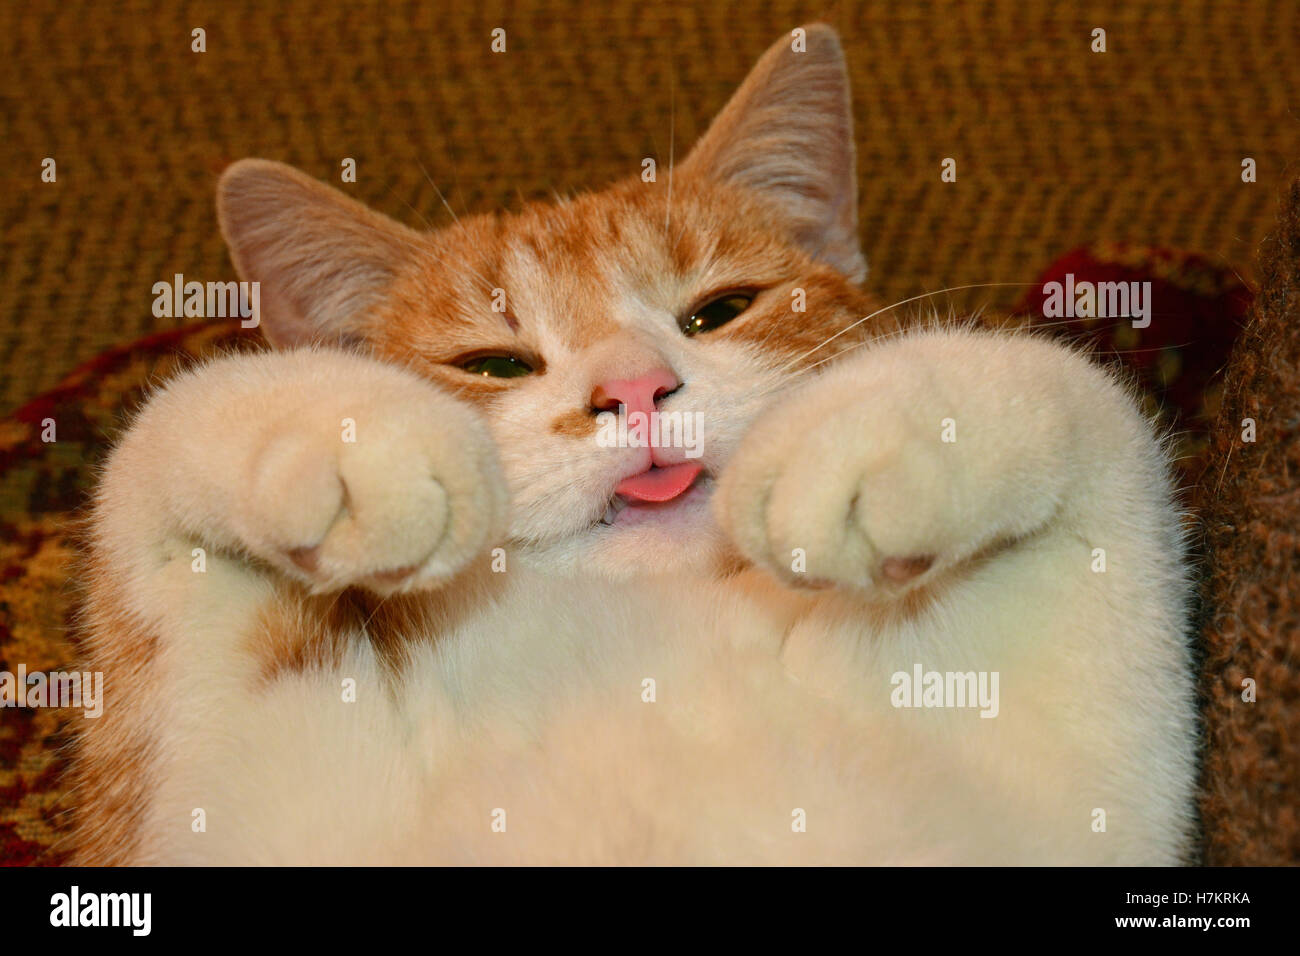 Muy lindo bebé jengibre gatito posando con su vientre frota Foto de stock